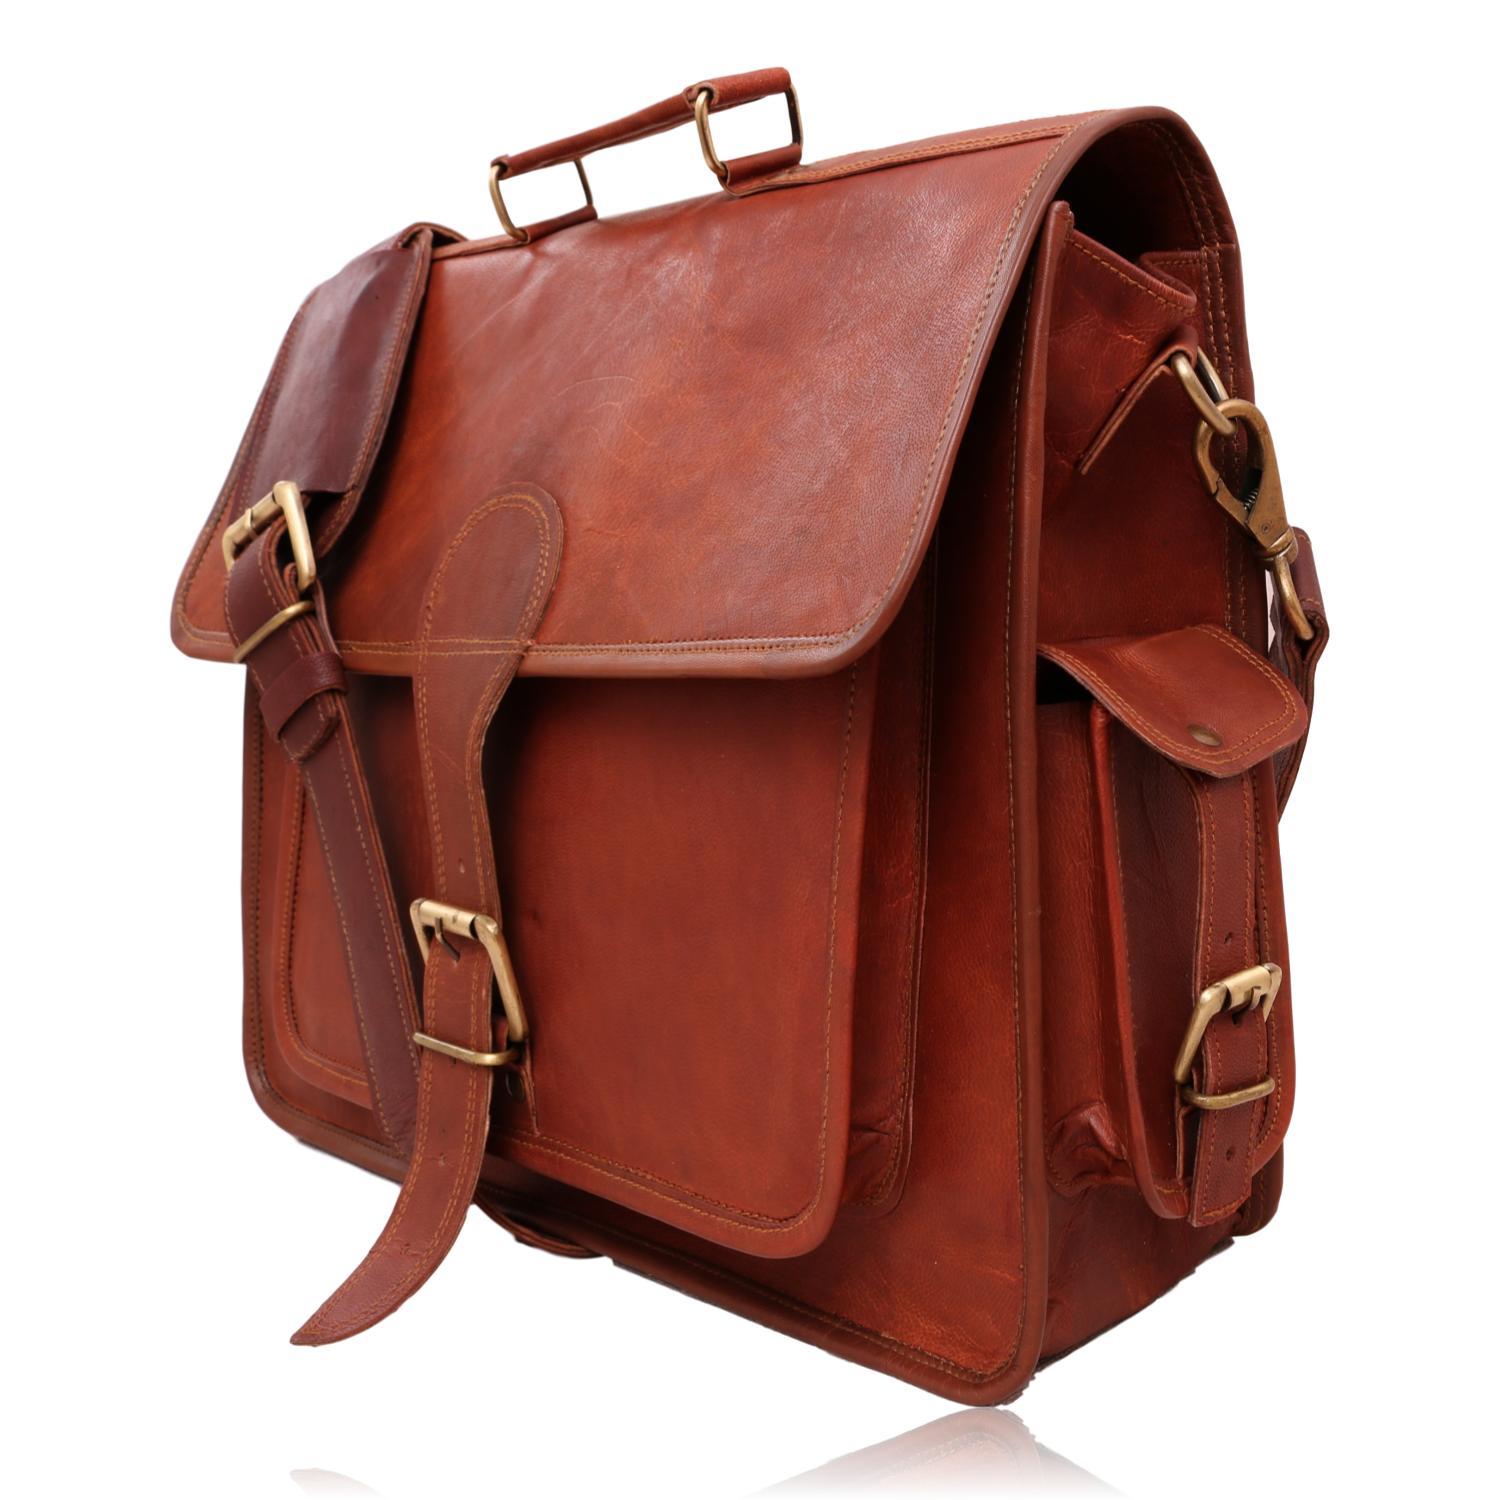 Vintage Leather Shoulder Bag | Quvom.com